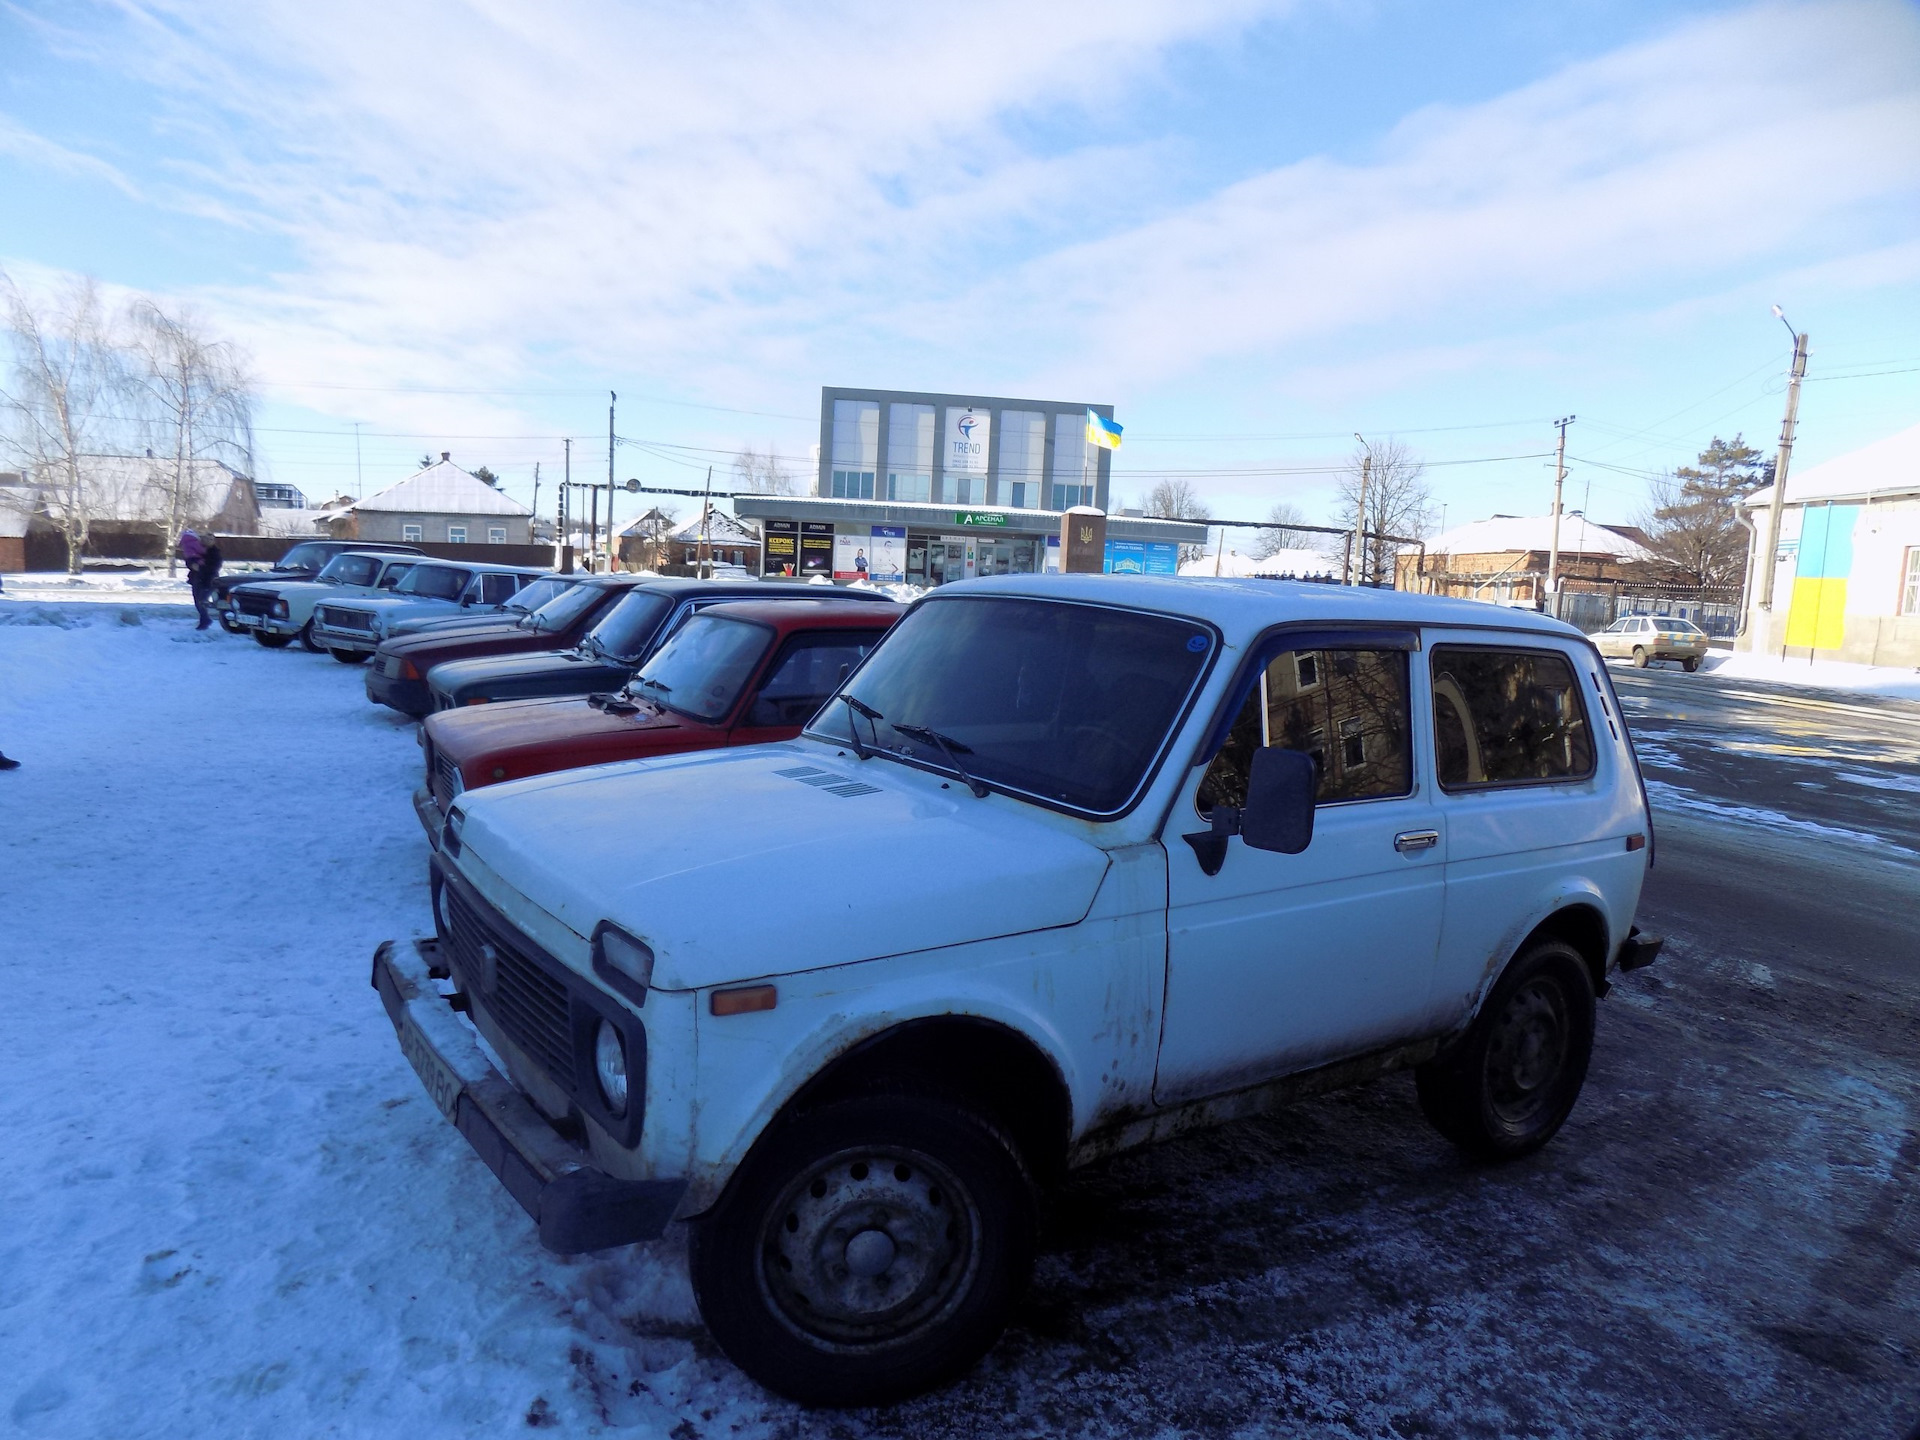 Дергачи купить продать саратовская область новые. Продажа авто в Дергачах Саратовской области.